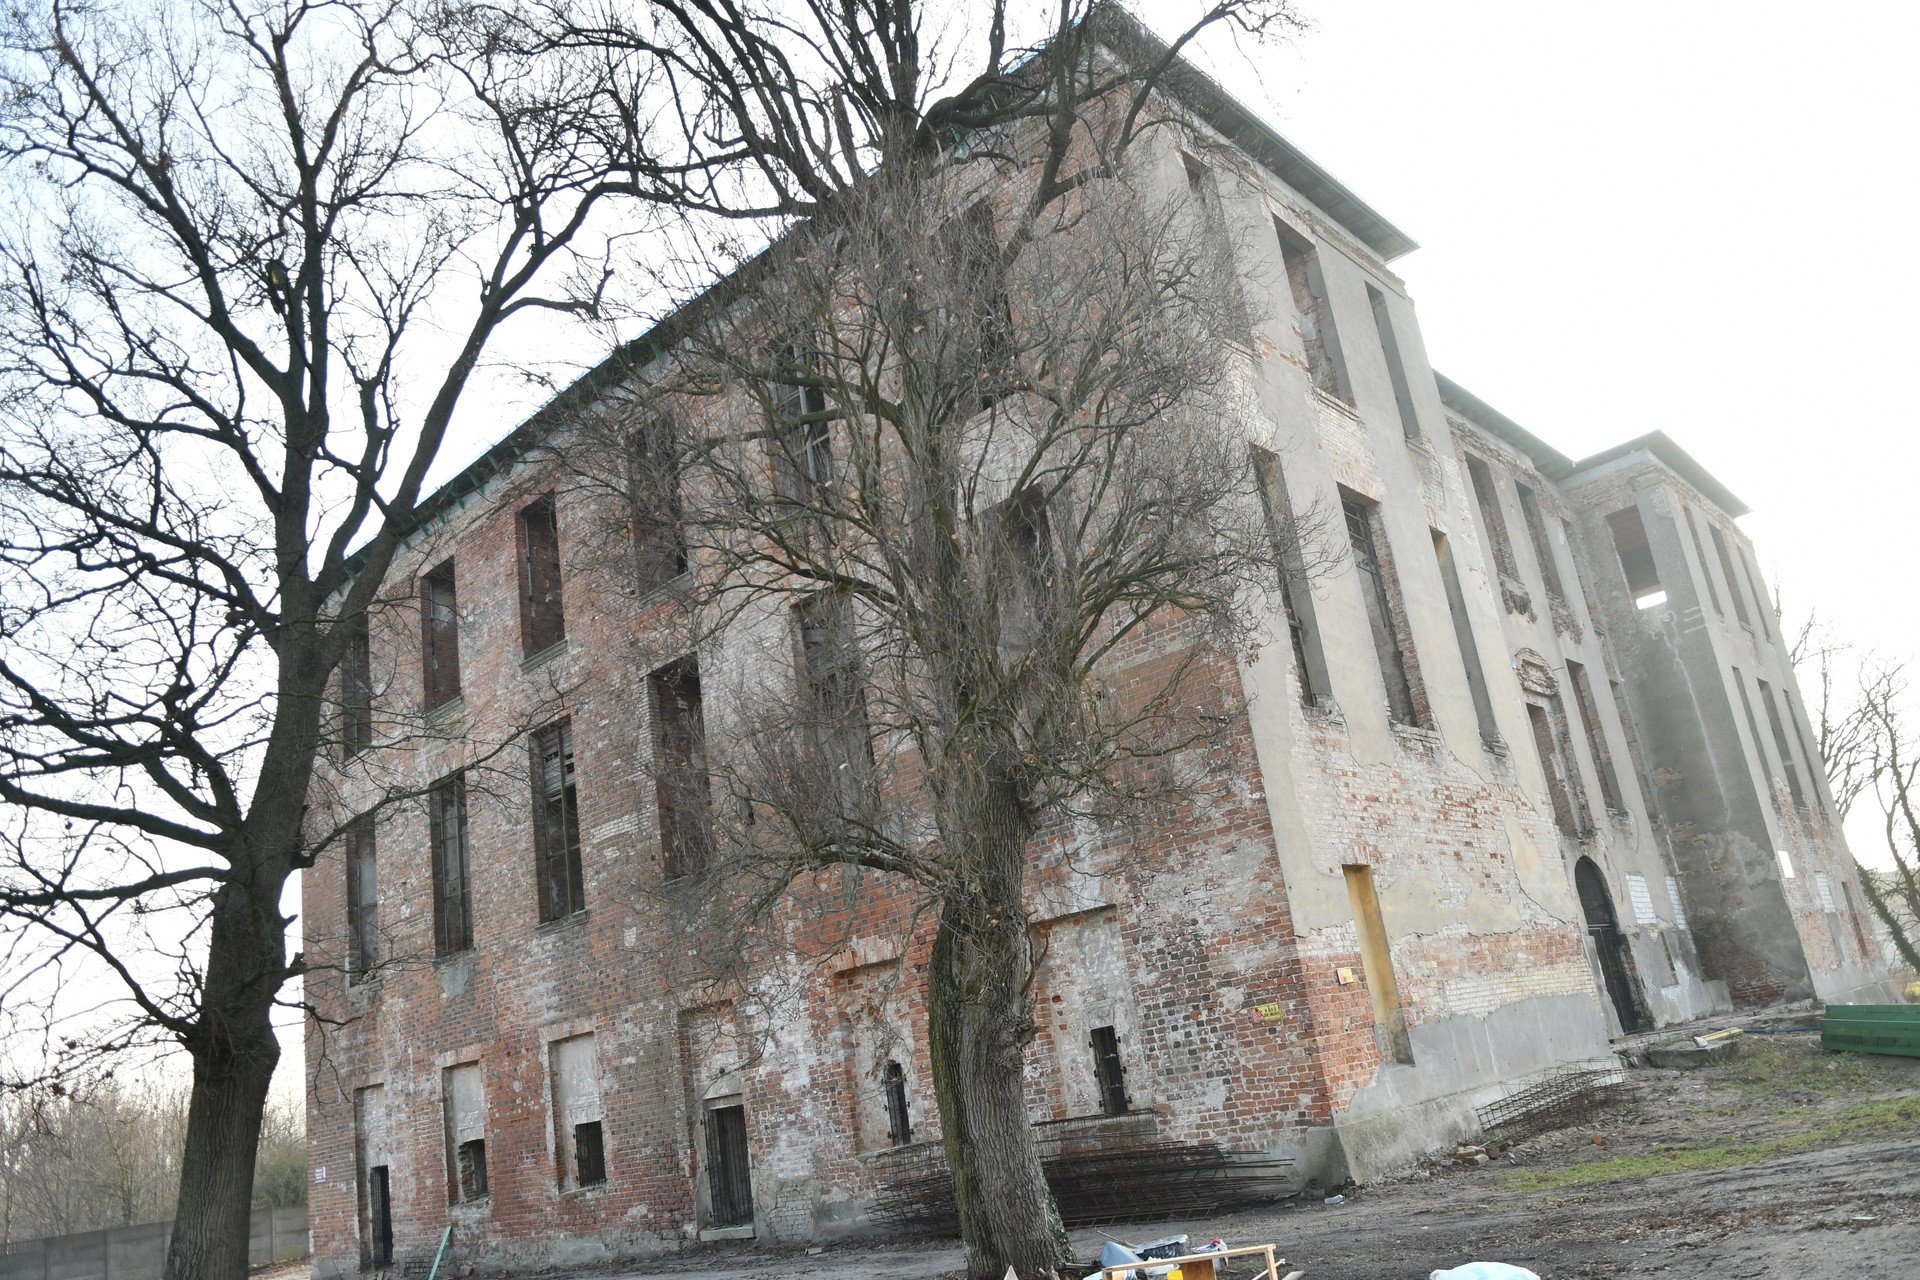 Lubuskie pałace - Słońsk. W tych ruinach zamknięta jest historia lubuskich  joannitów | Gazeta Lubuska